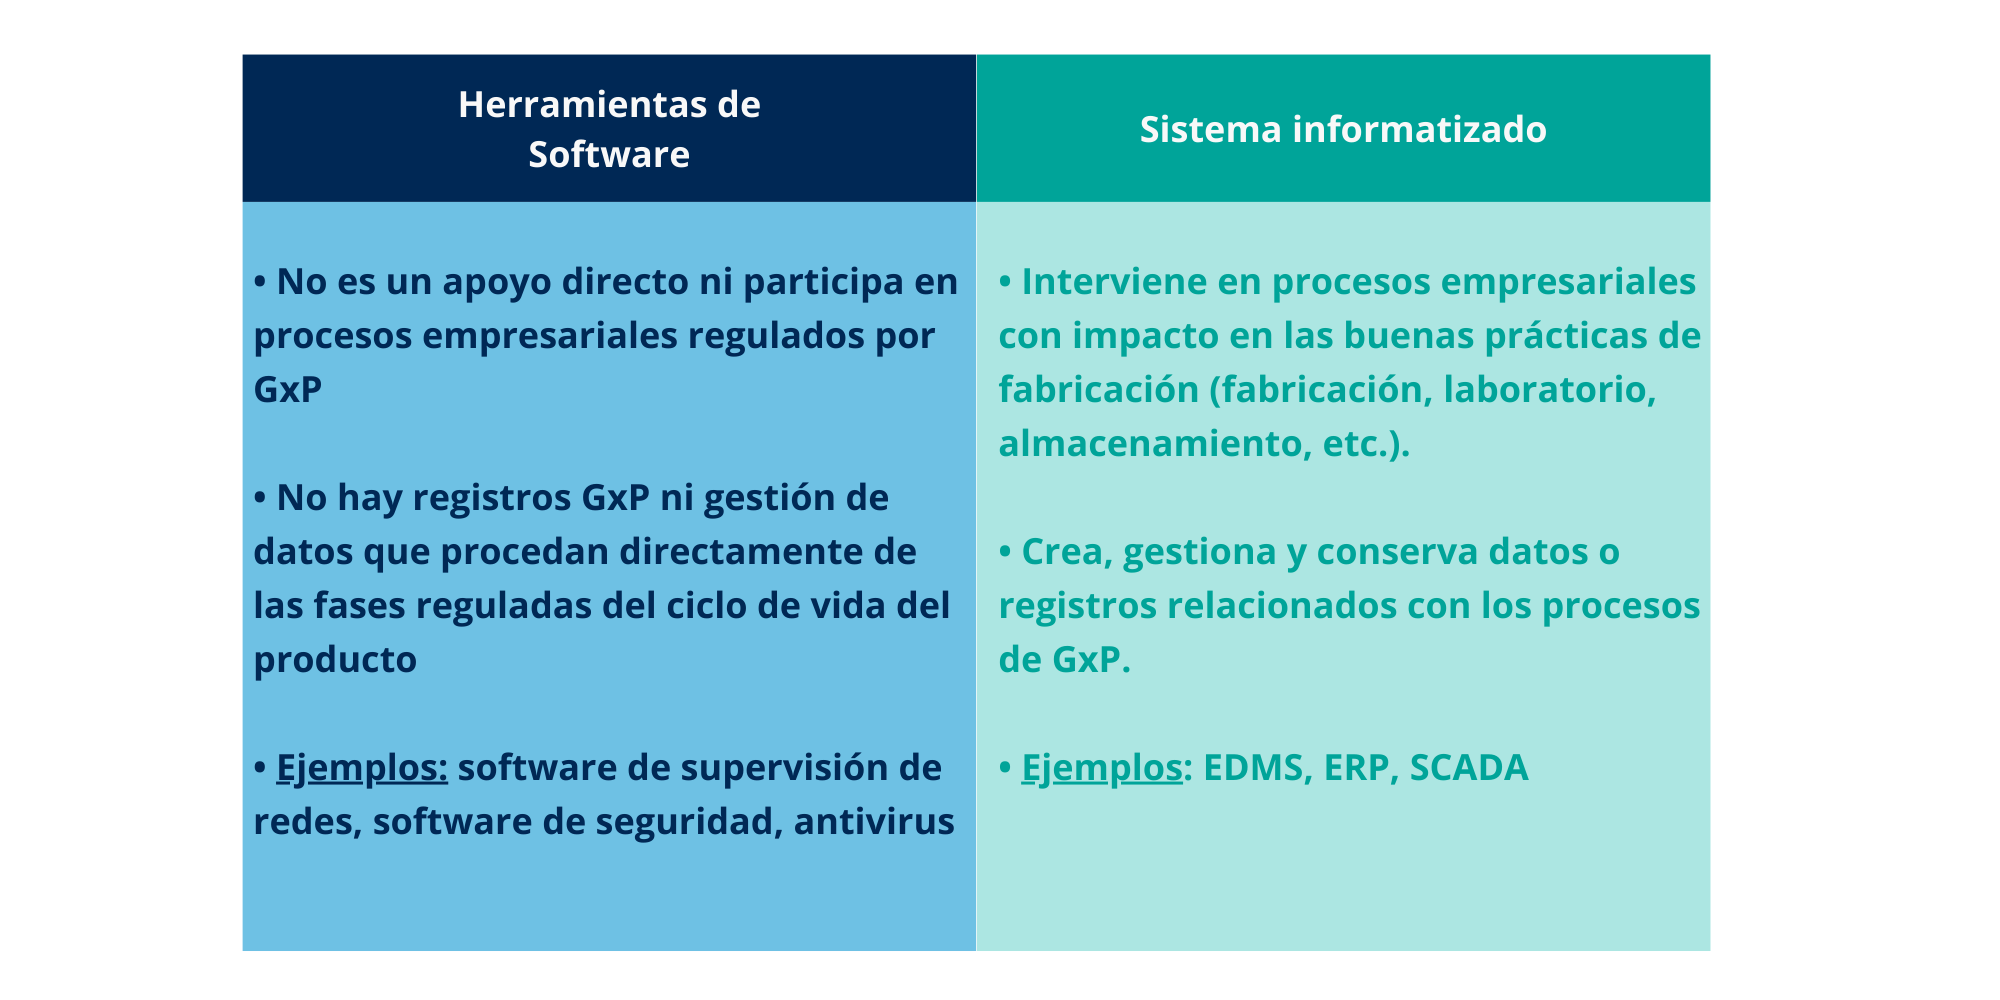 GAMP5 Segunda Edición: Diferencias entre Software y Sistema Informatizado